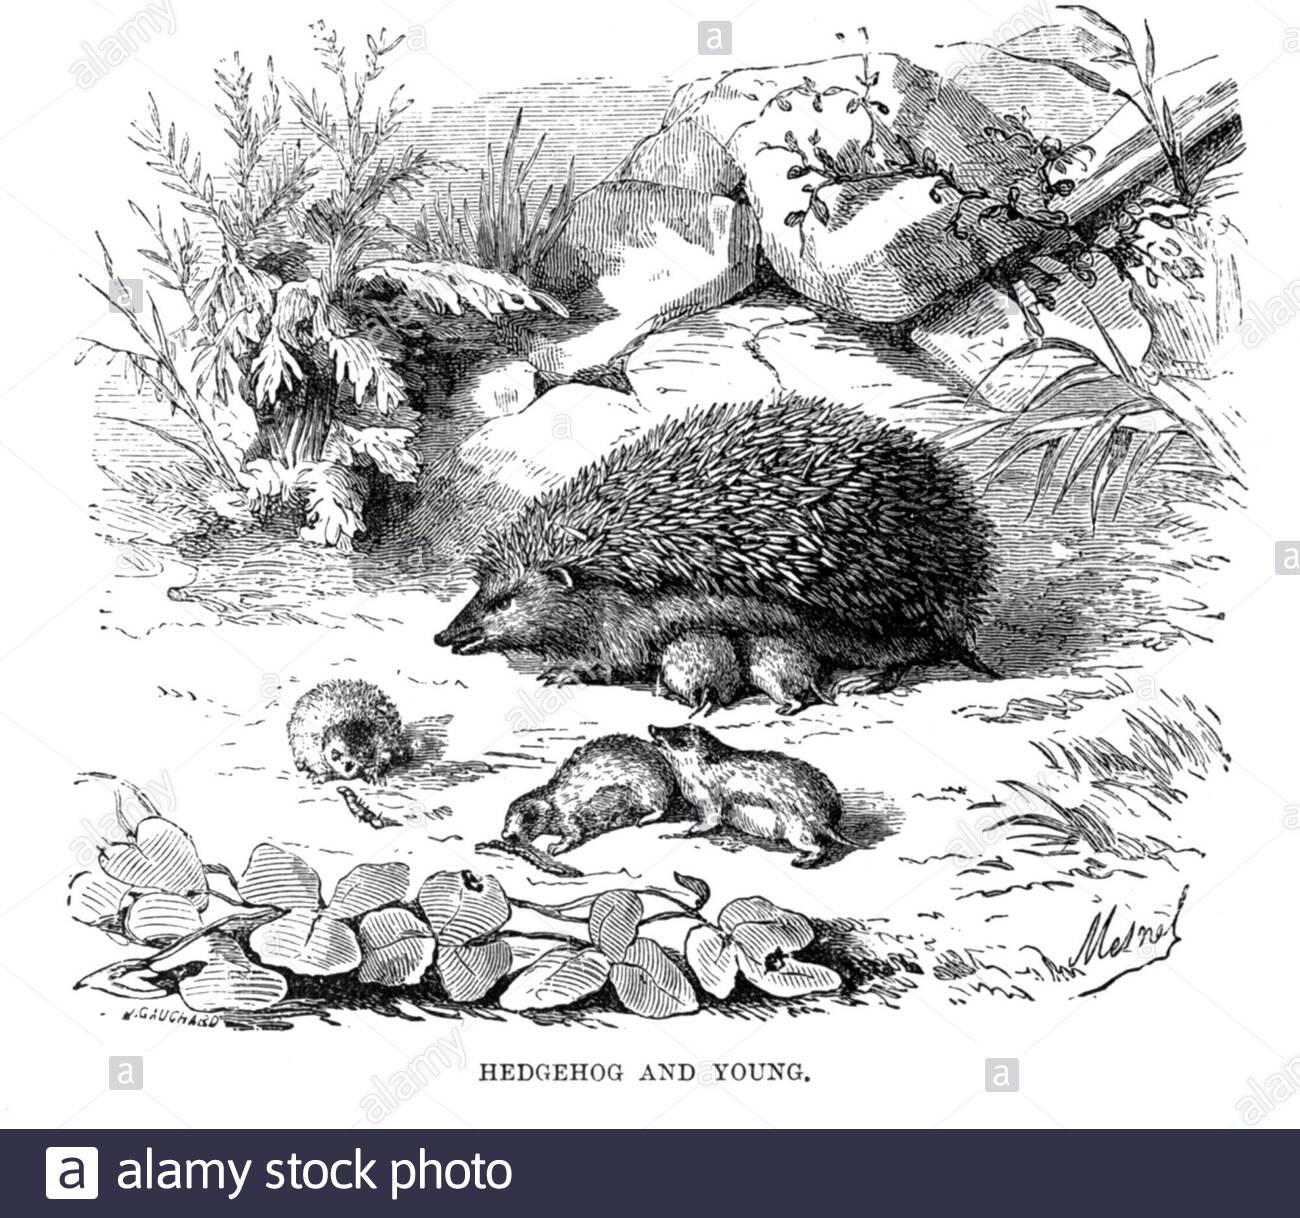 Hedgehog comune con giovane, illustrazione vintage dal 1893 Foto Stock